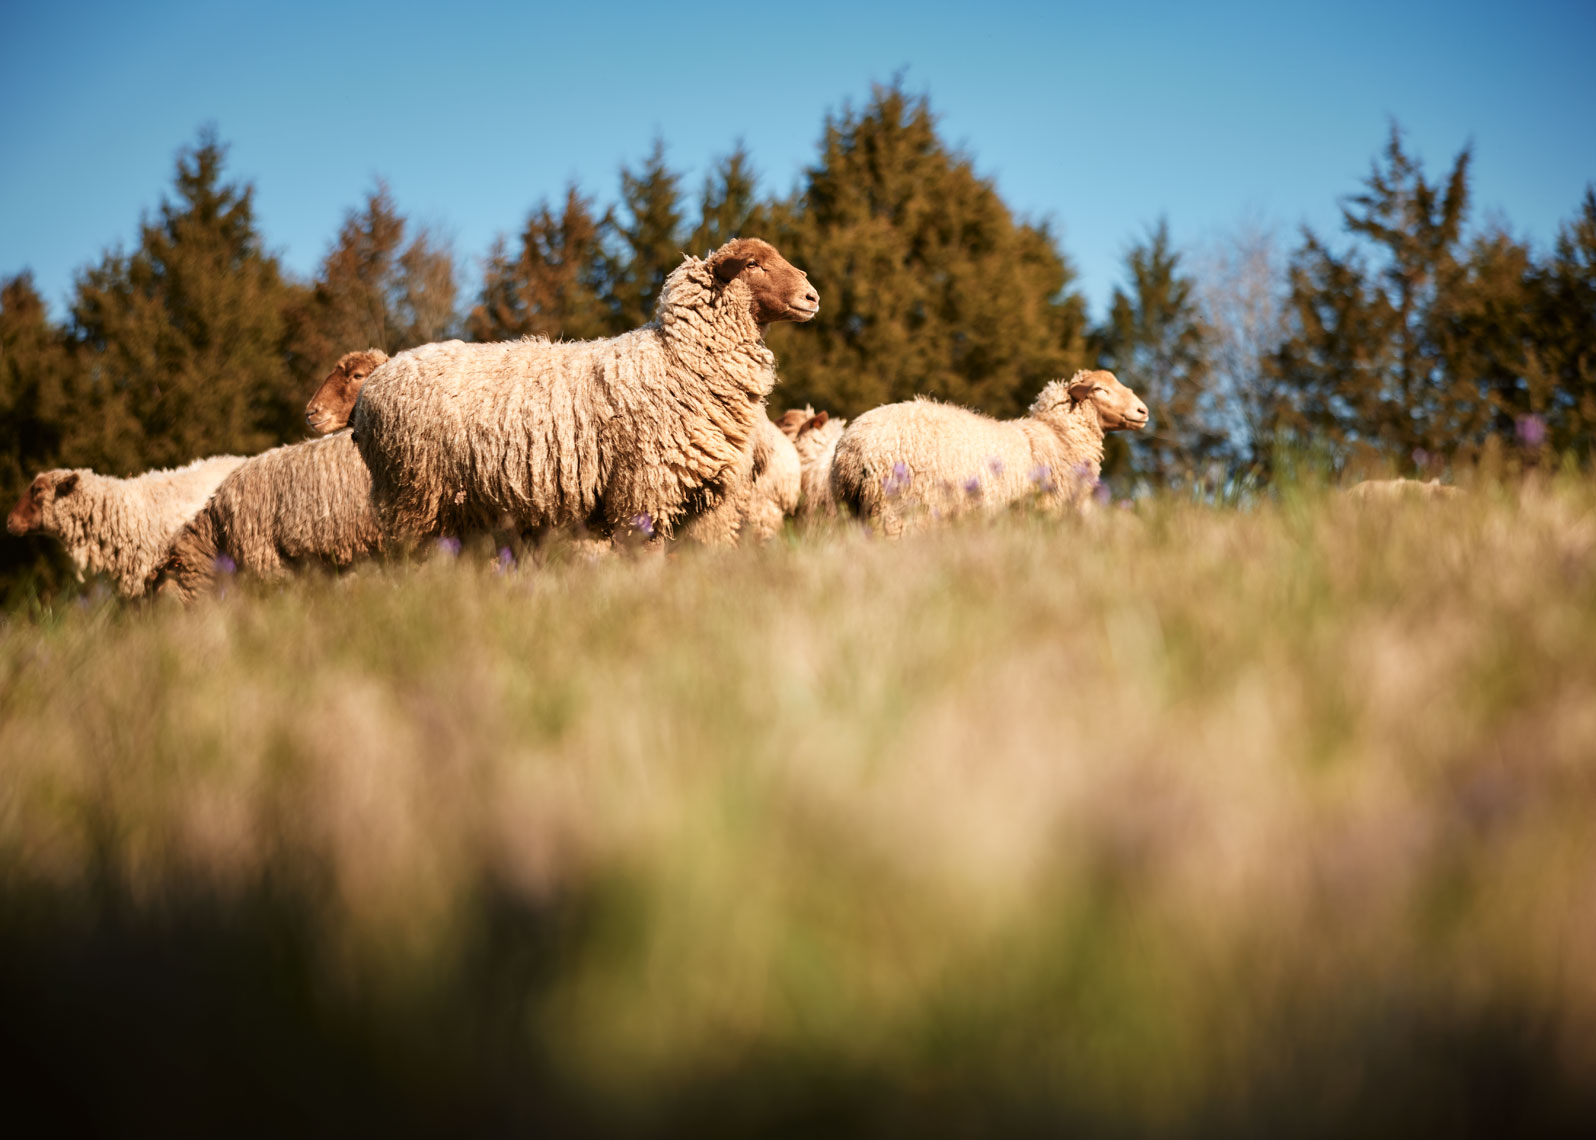 19-SHEEP-Sheep-0548